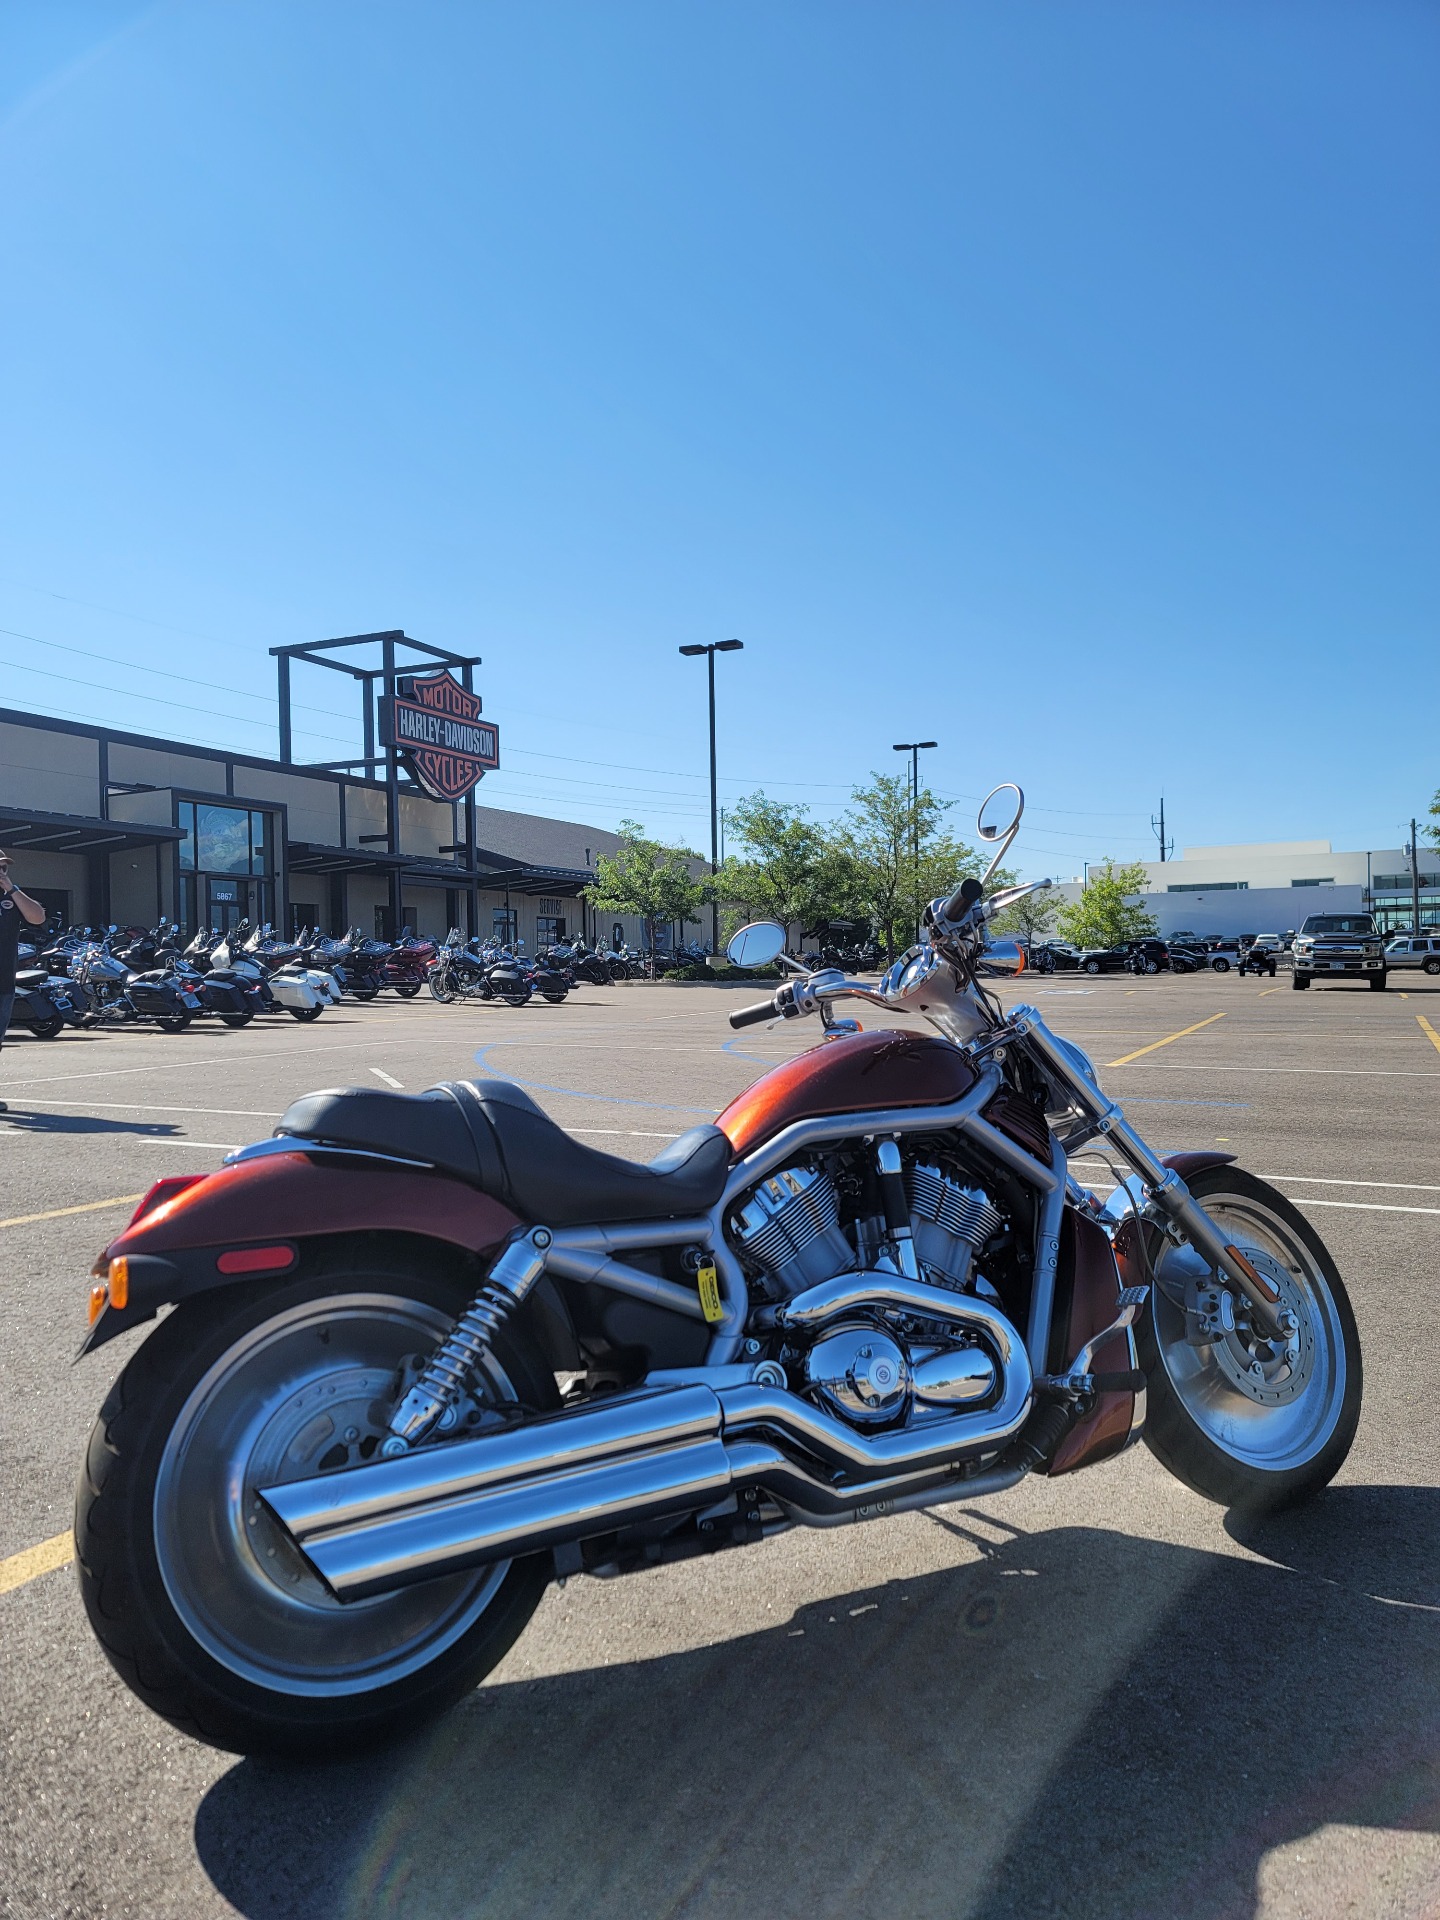 2003 Harley-Davidson VRSCA  V-Rod® in Colorado Springs, Colorado - Photo 6